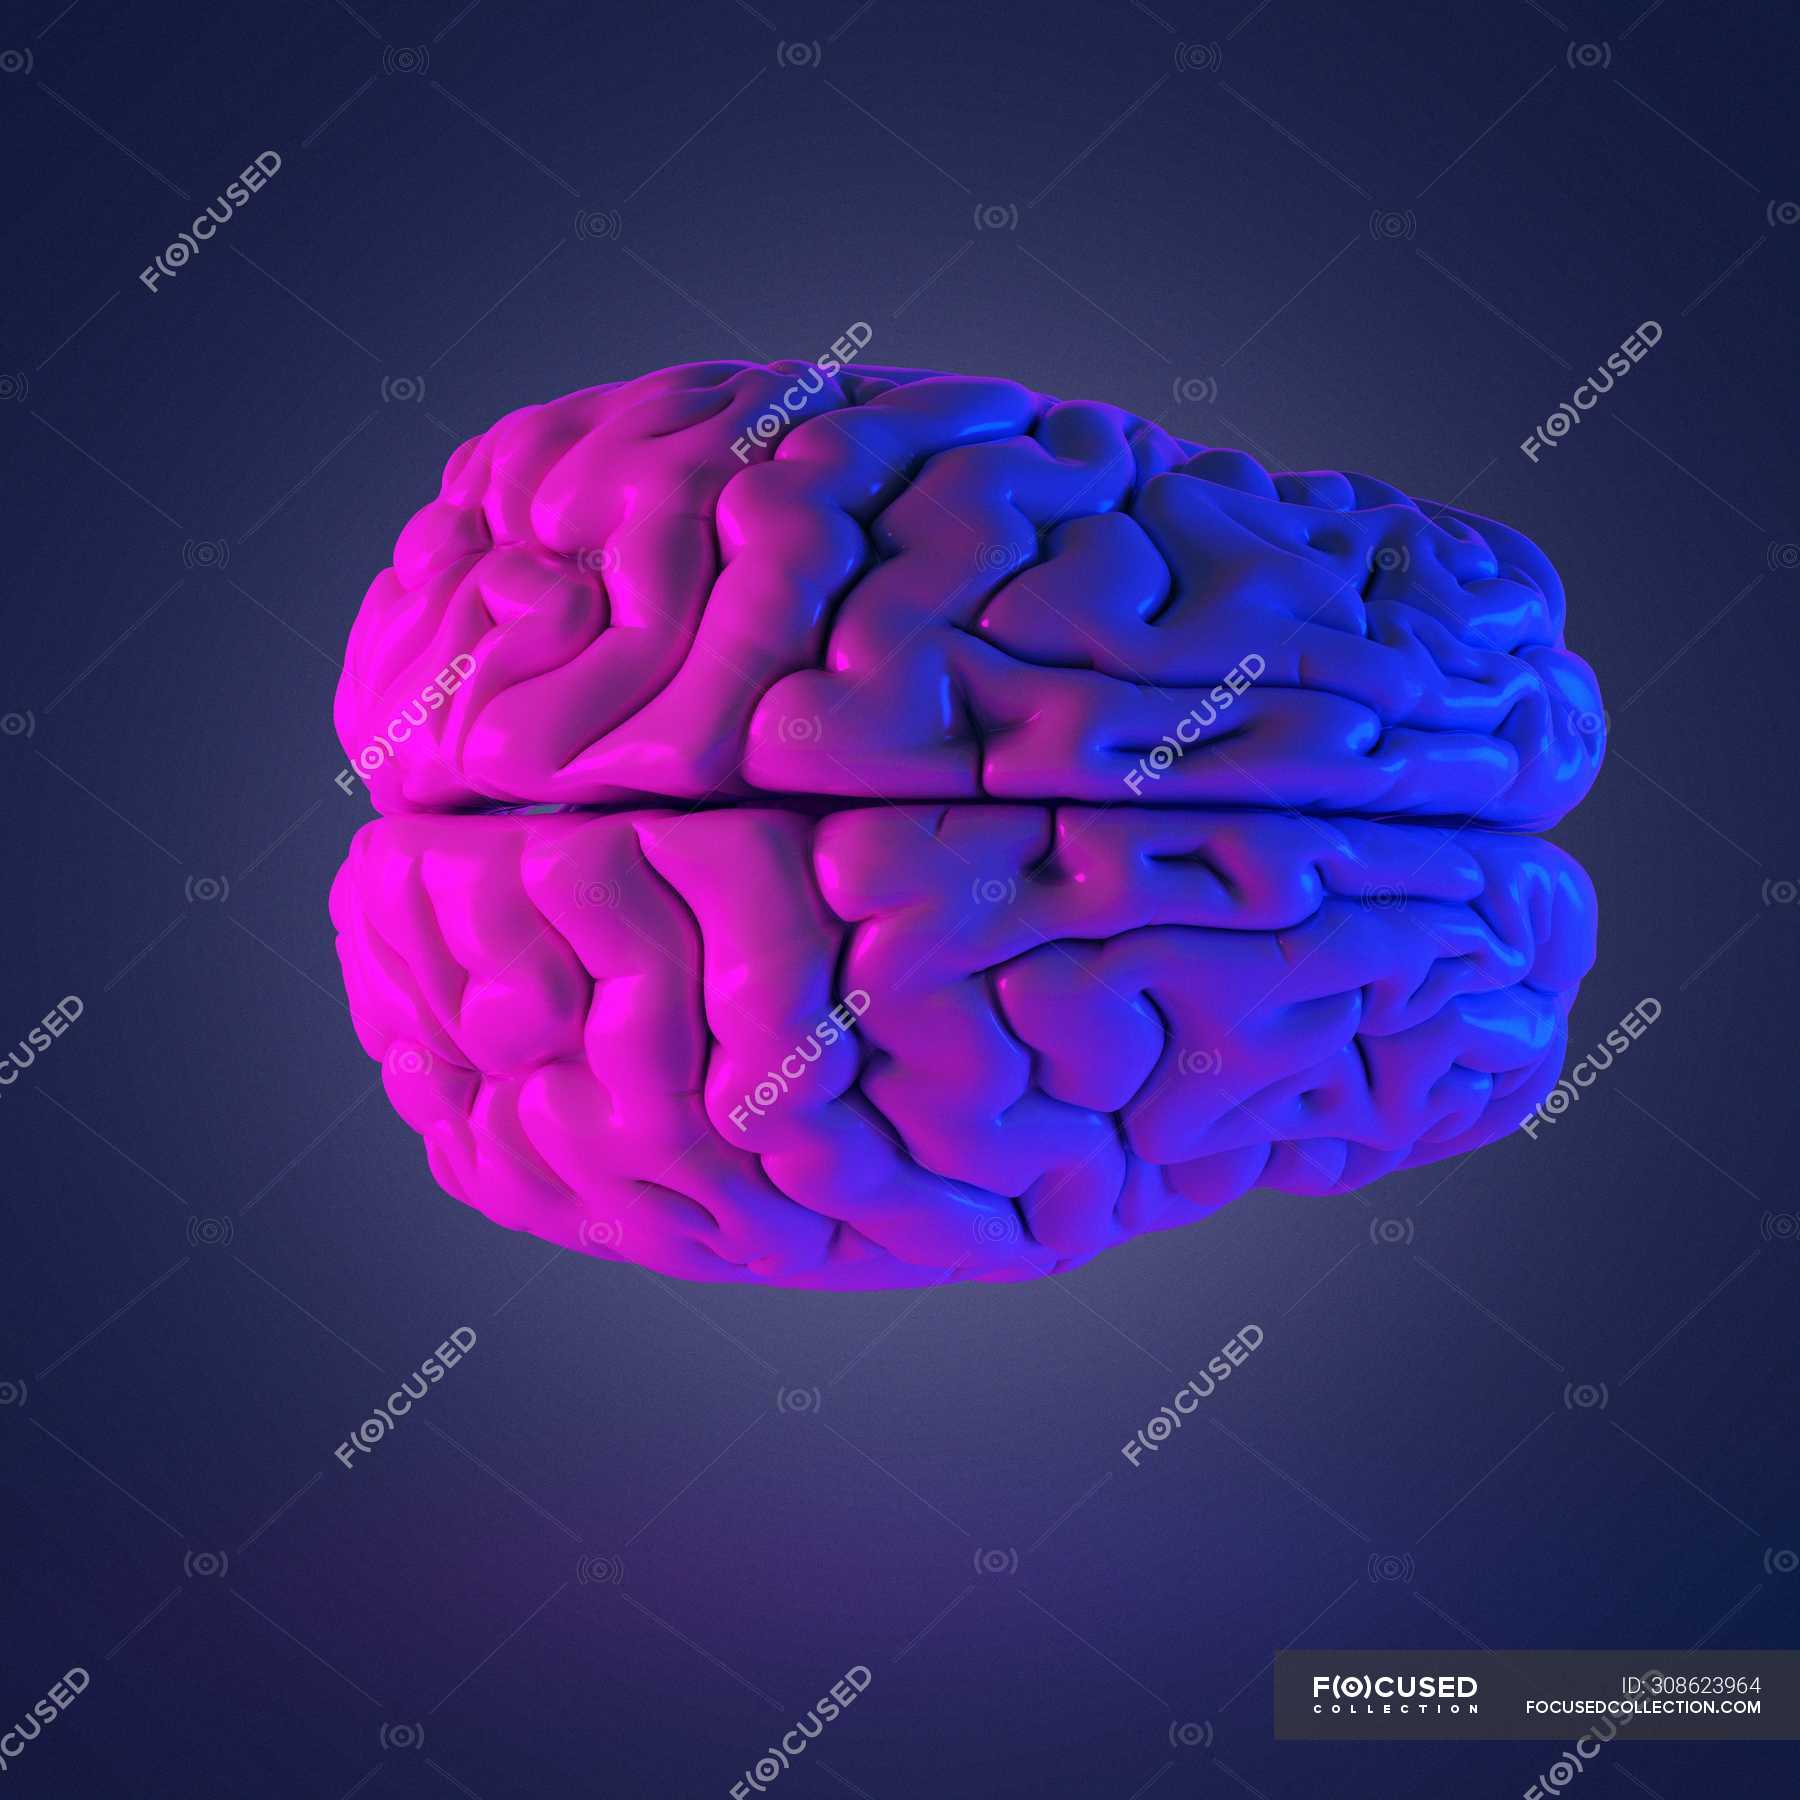 Реферат: Головной мозг человека